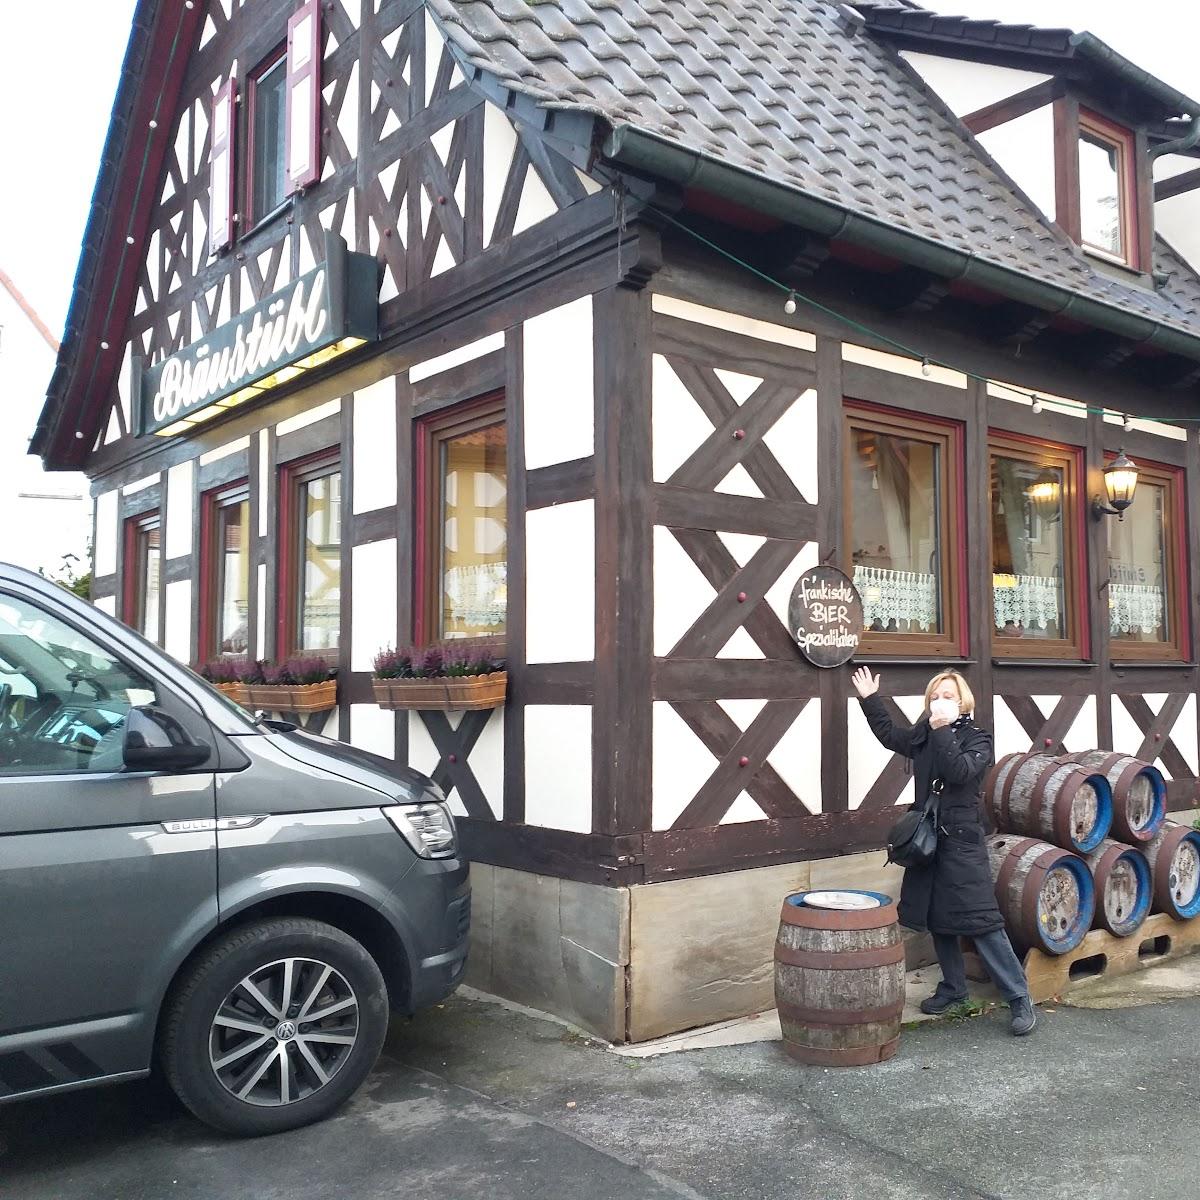 Restaurant "Staffelberg-Bräu" in Bad Staffelstein